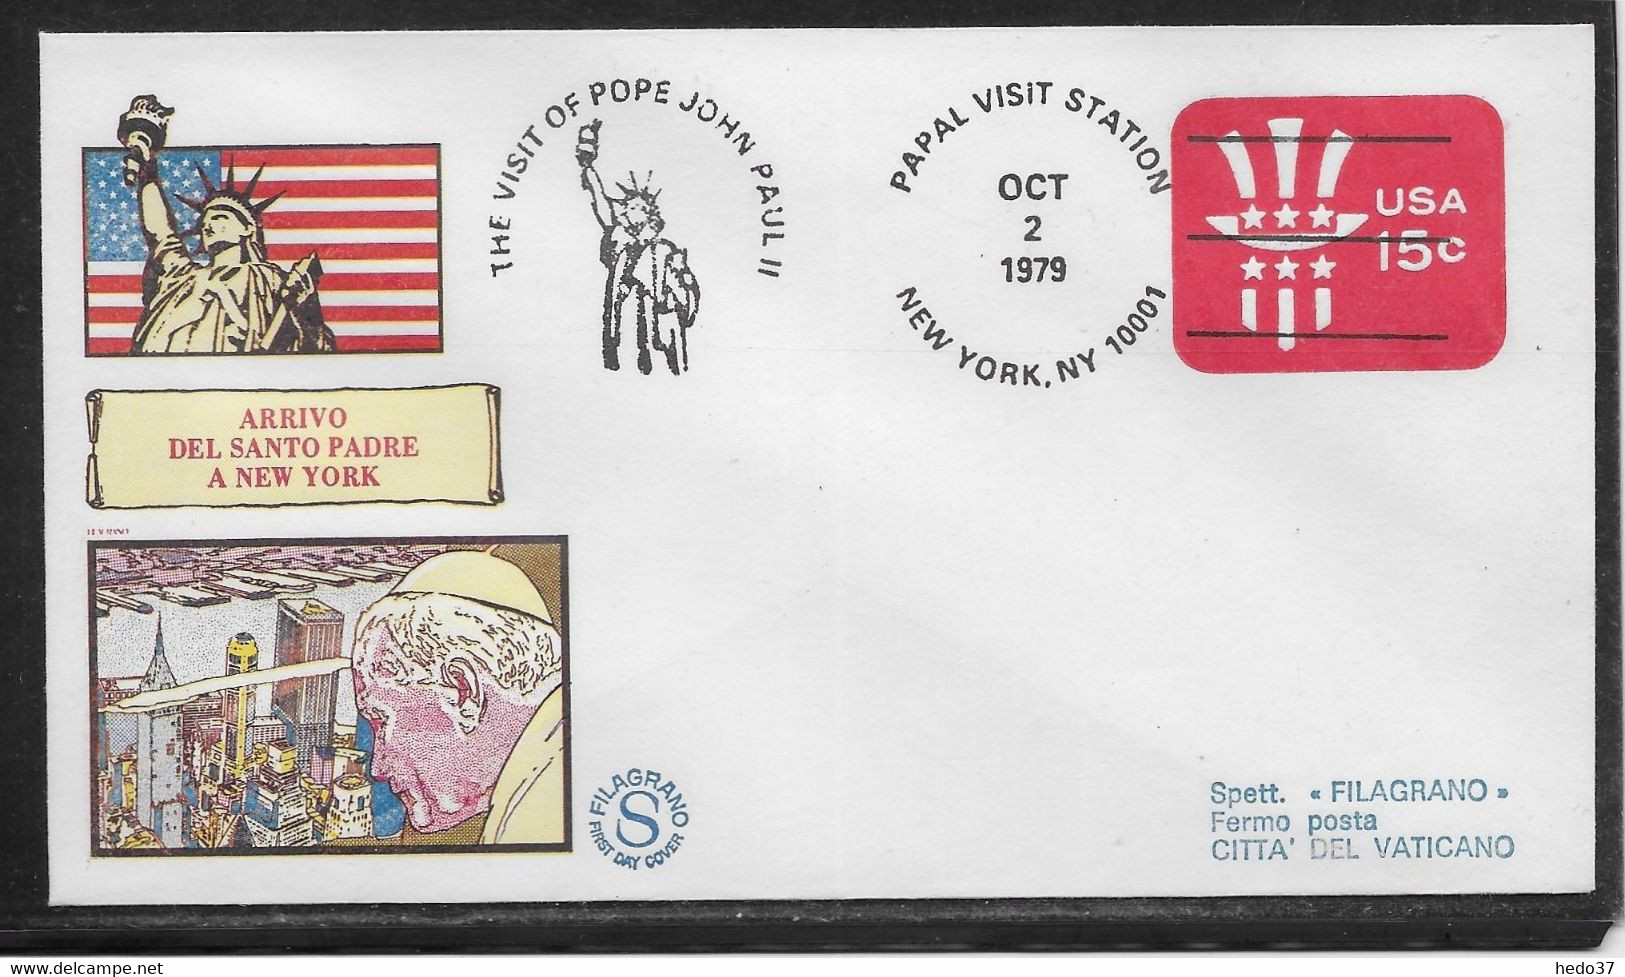 Etats Unis - Entiers Postaux - Thème Papes - TB - 1981-00